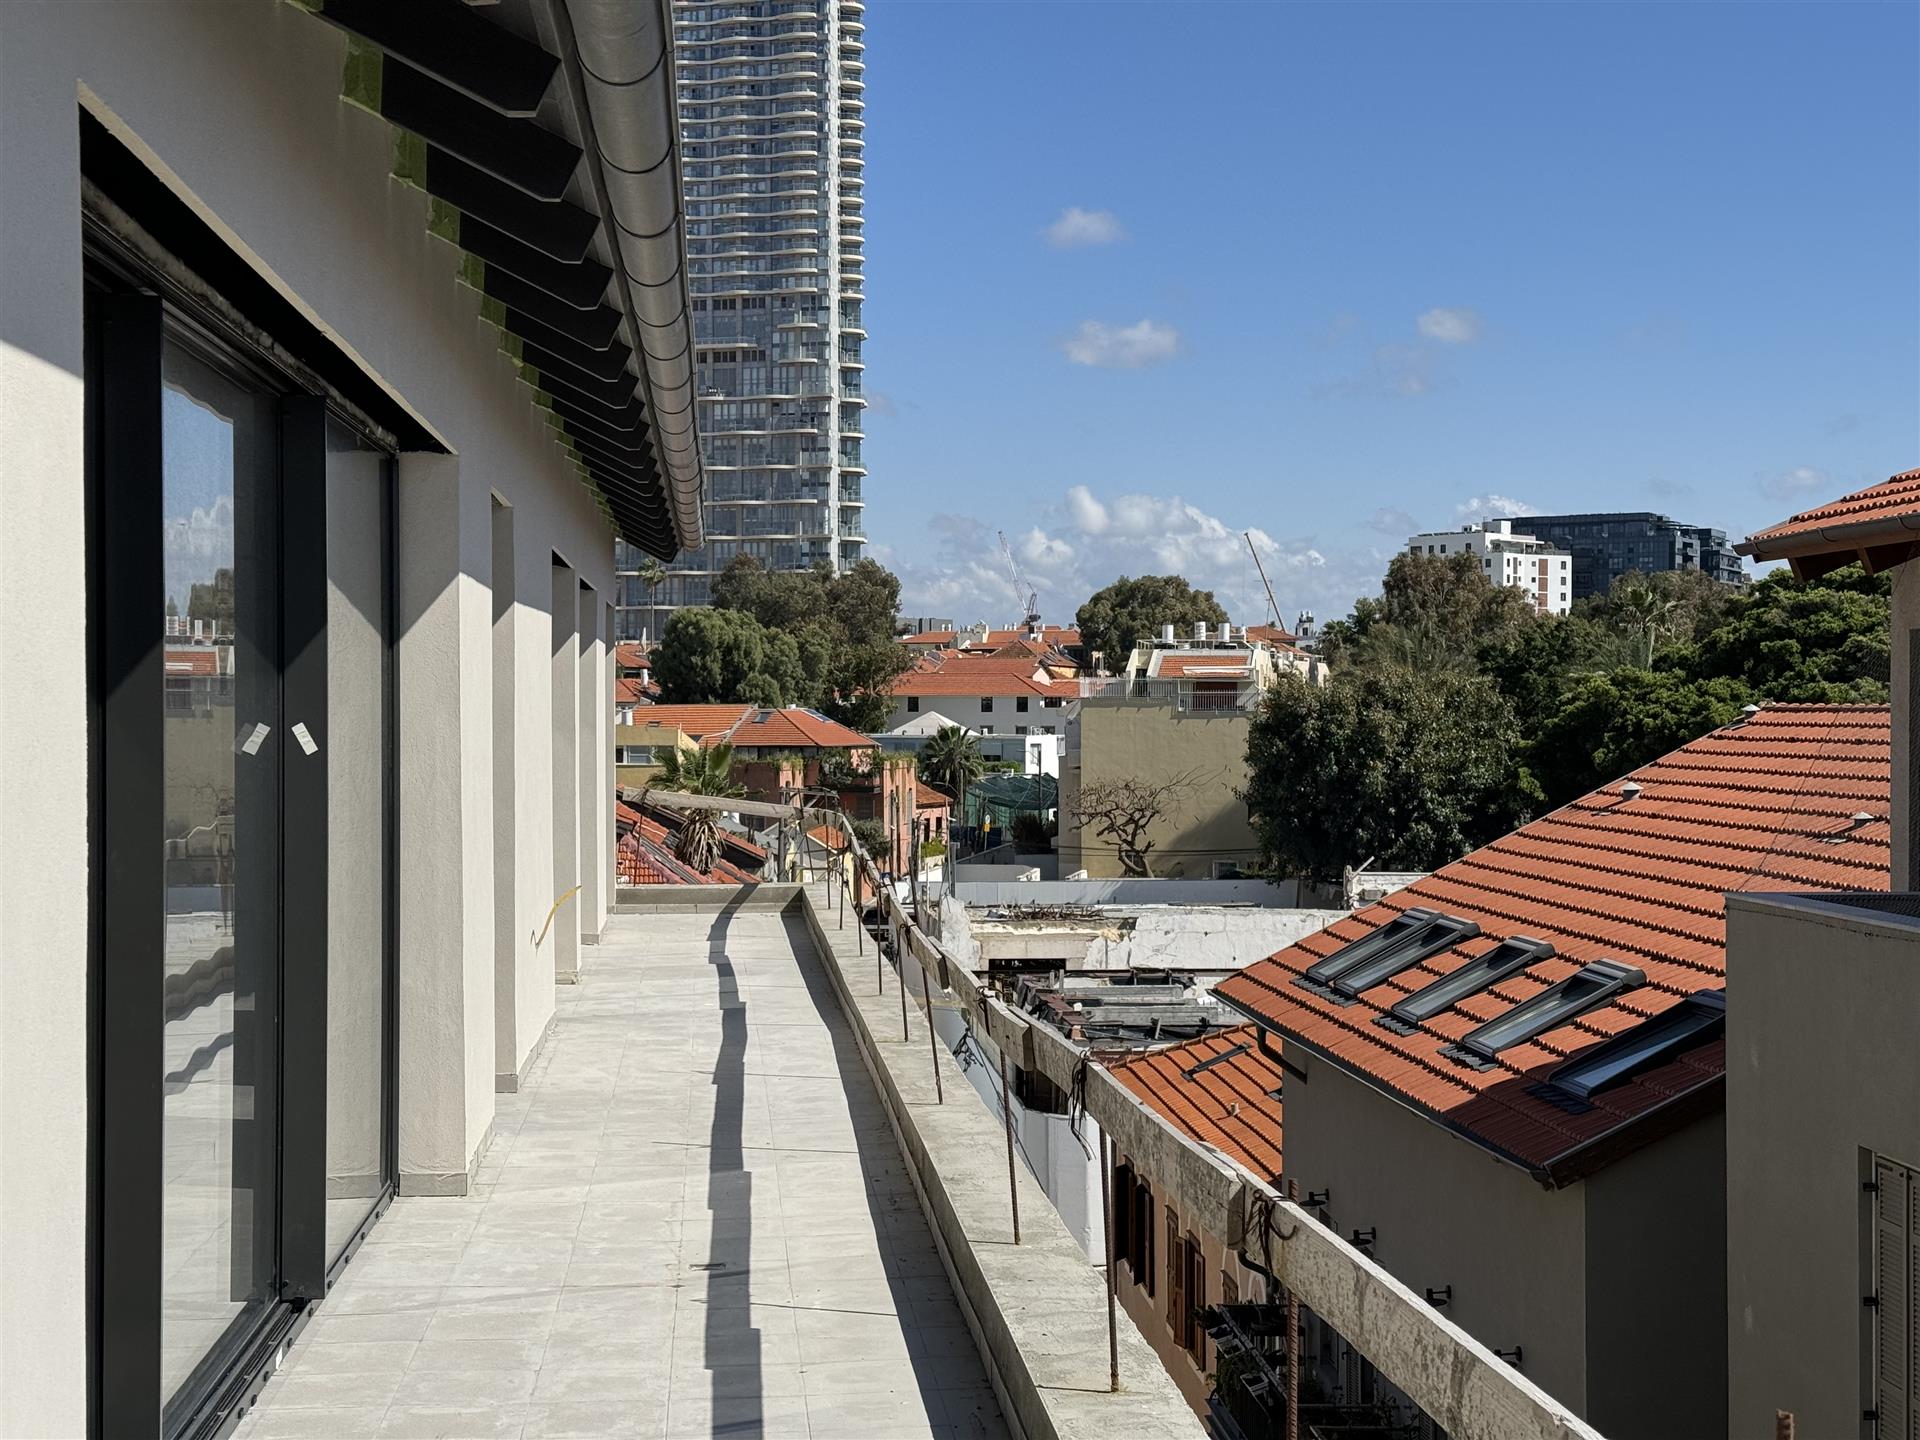 A luxury penthouse for sale in the Neve Tzedek neighborhood of Tel Aviv